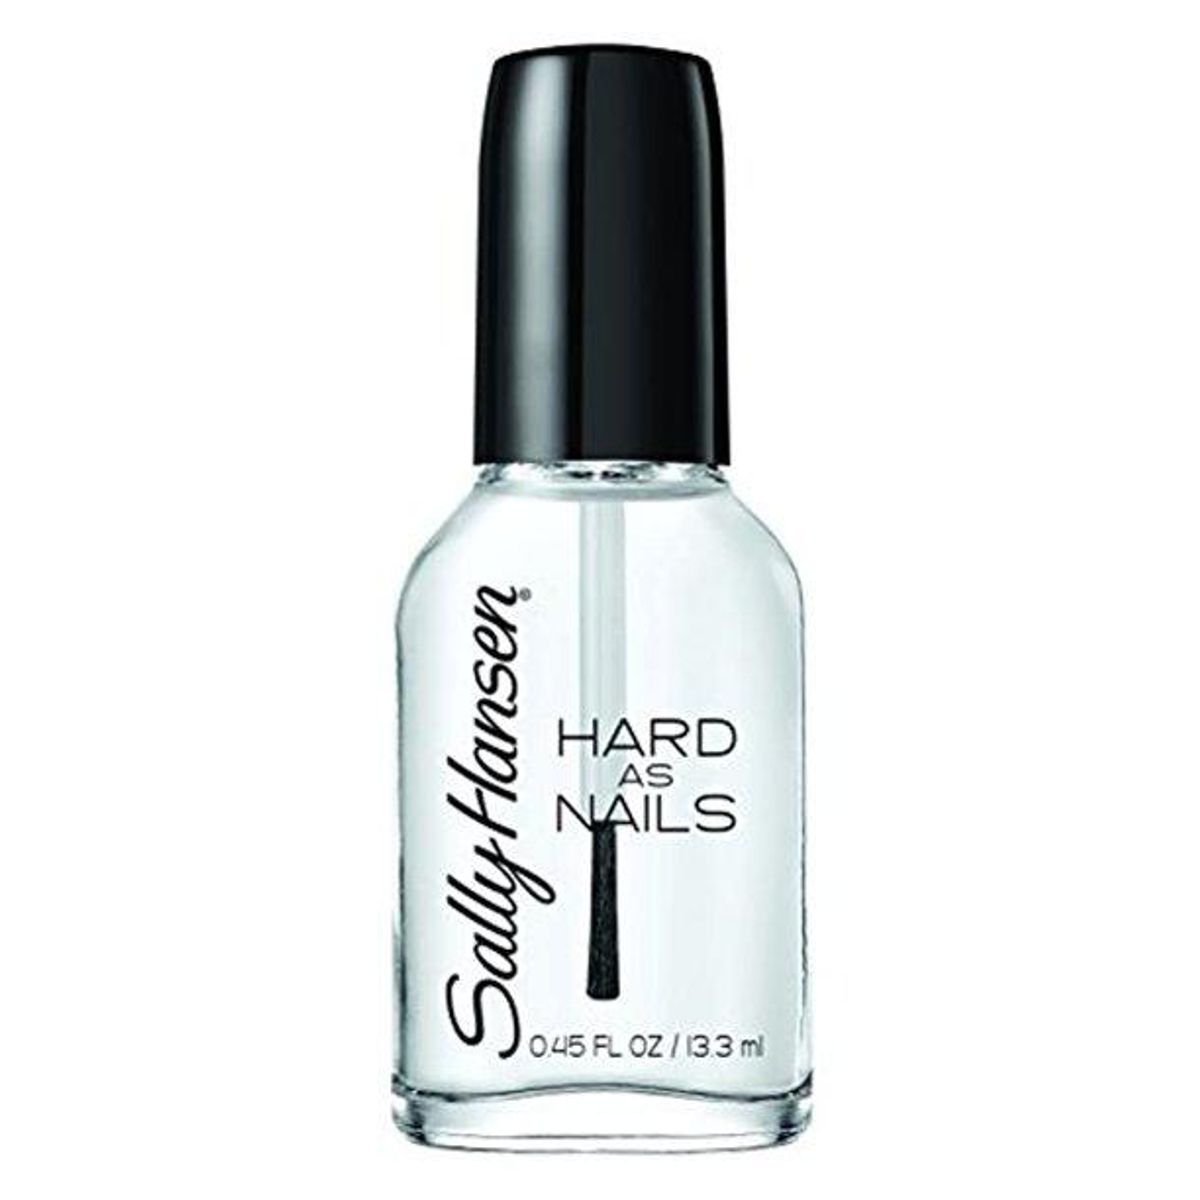 Hard as Nails Nail Polish in Crystal Clear